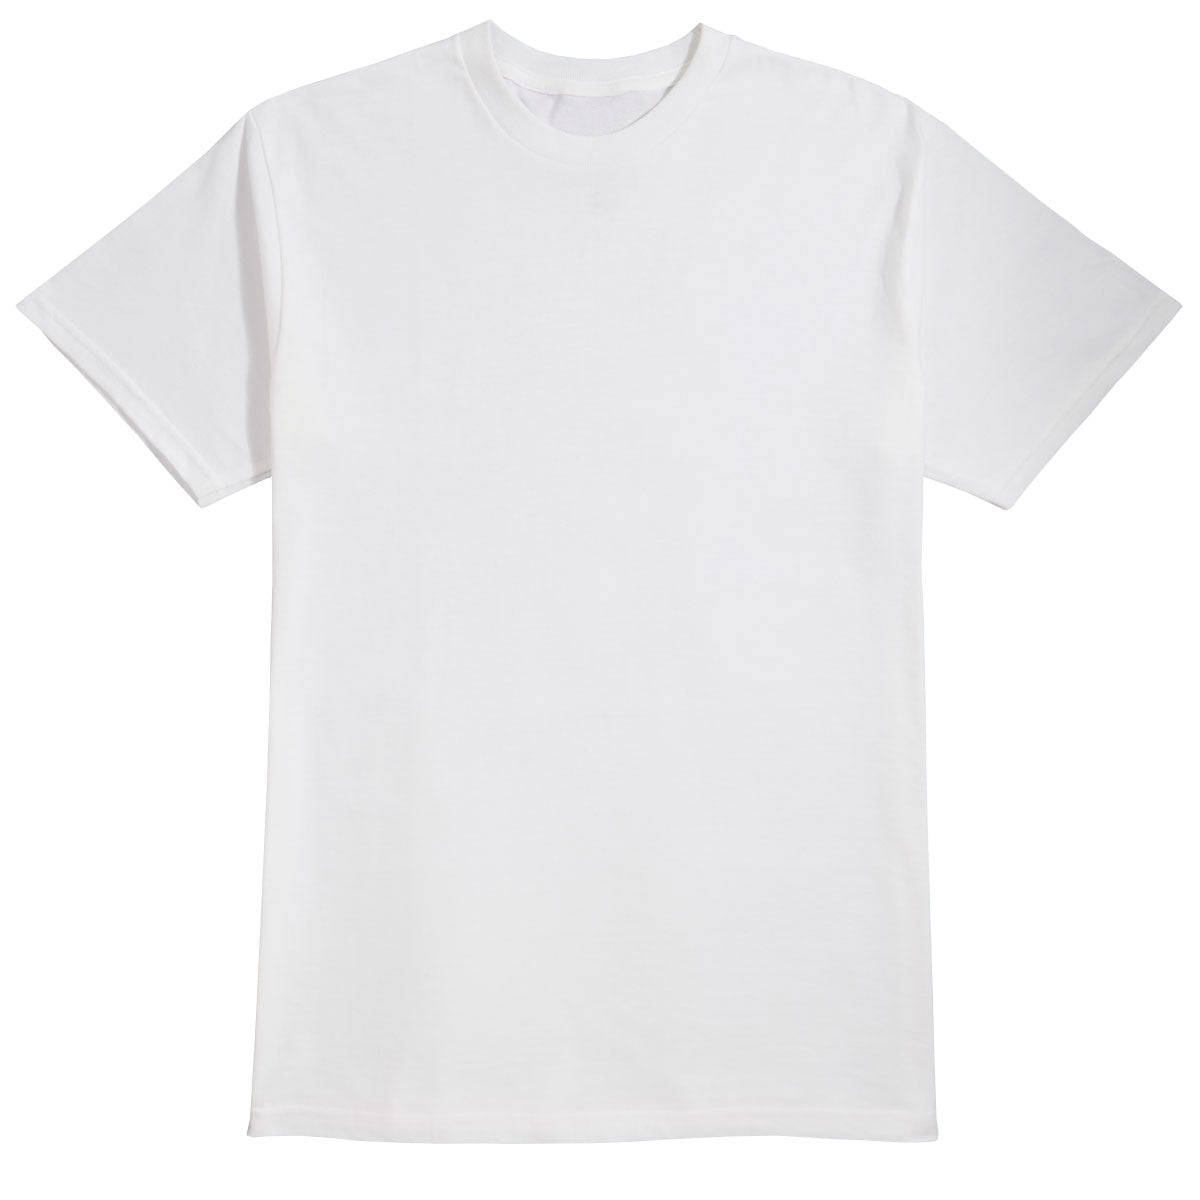 Alien Workshop Spectrum Color-Up T-Shirt - White - XL image 1